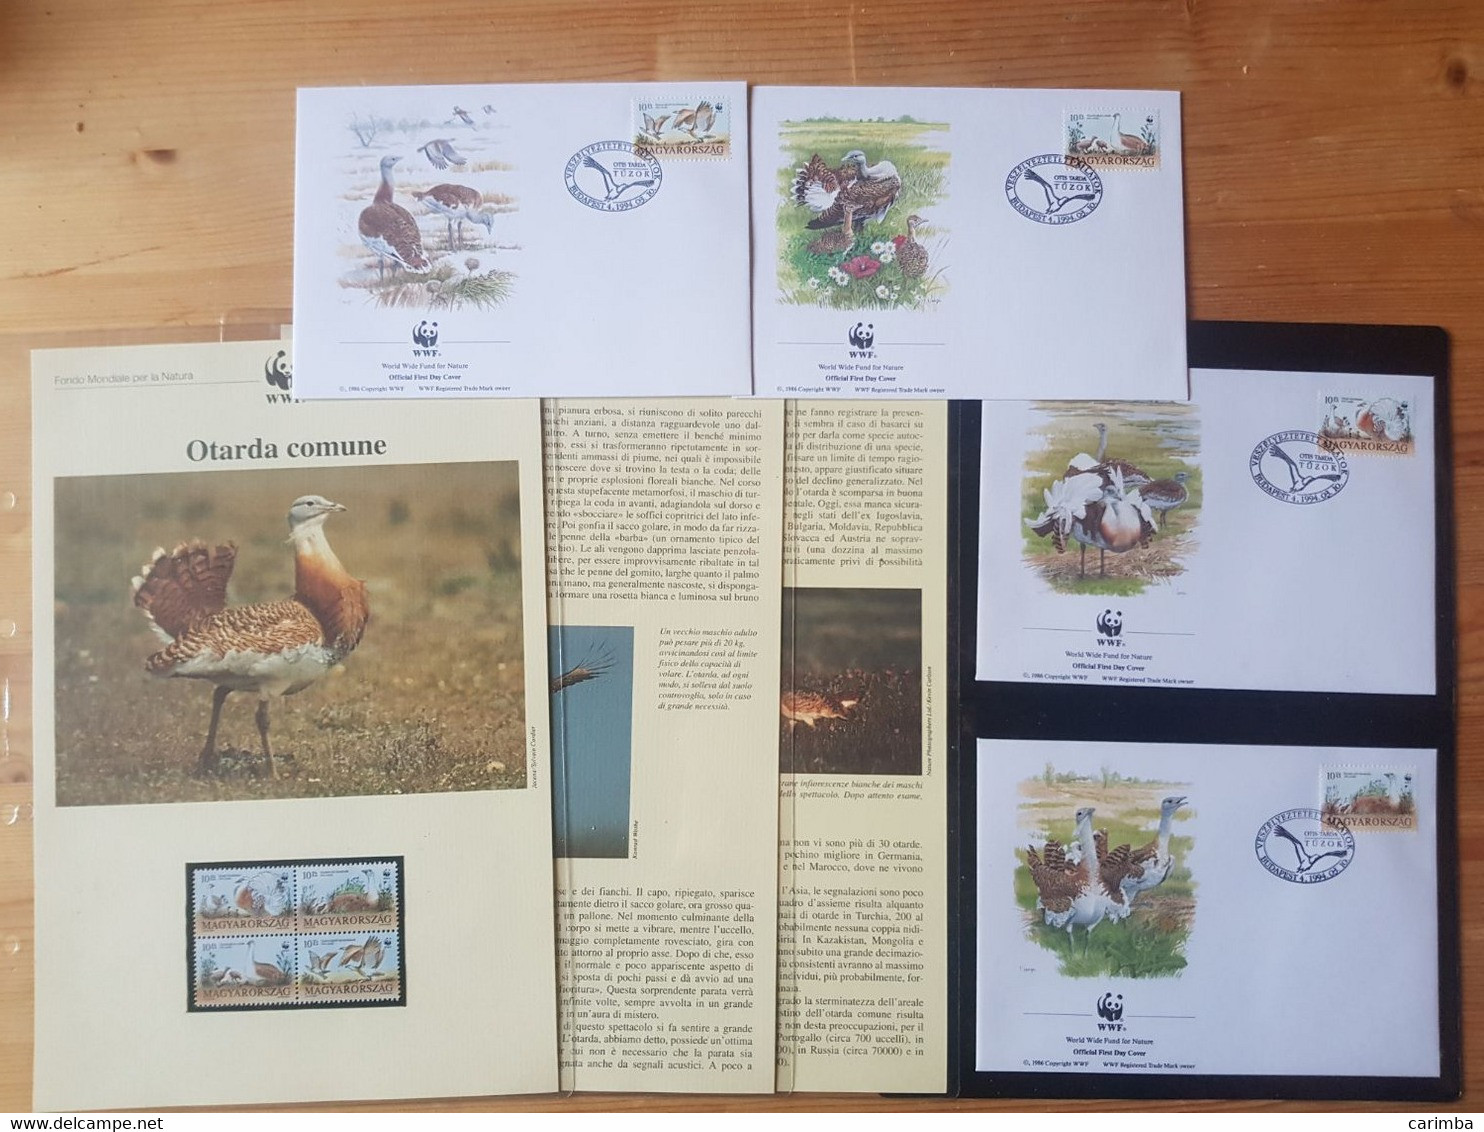 1994 UNGHERIA WWF OTARDA COMUNE - Colecciones & Series